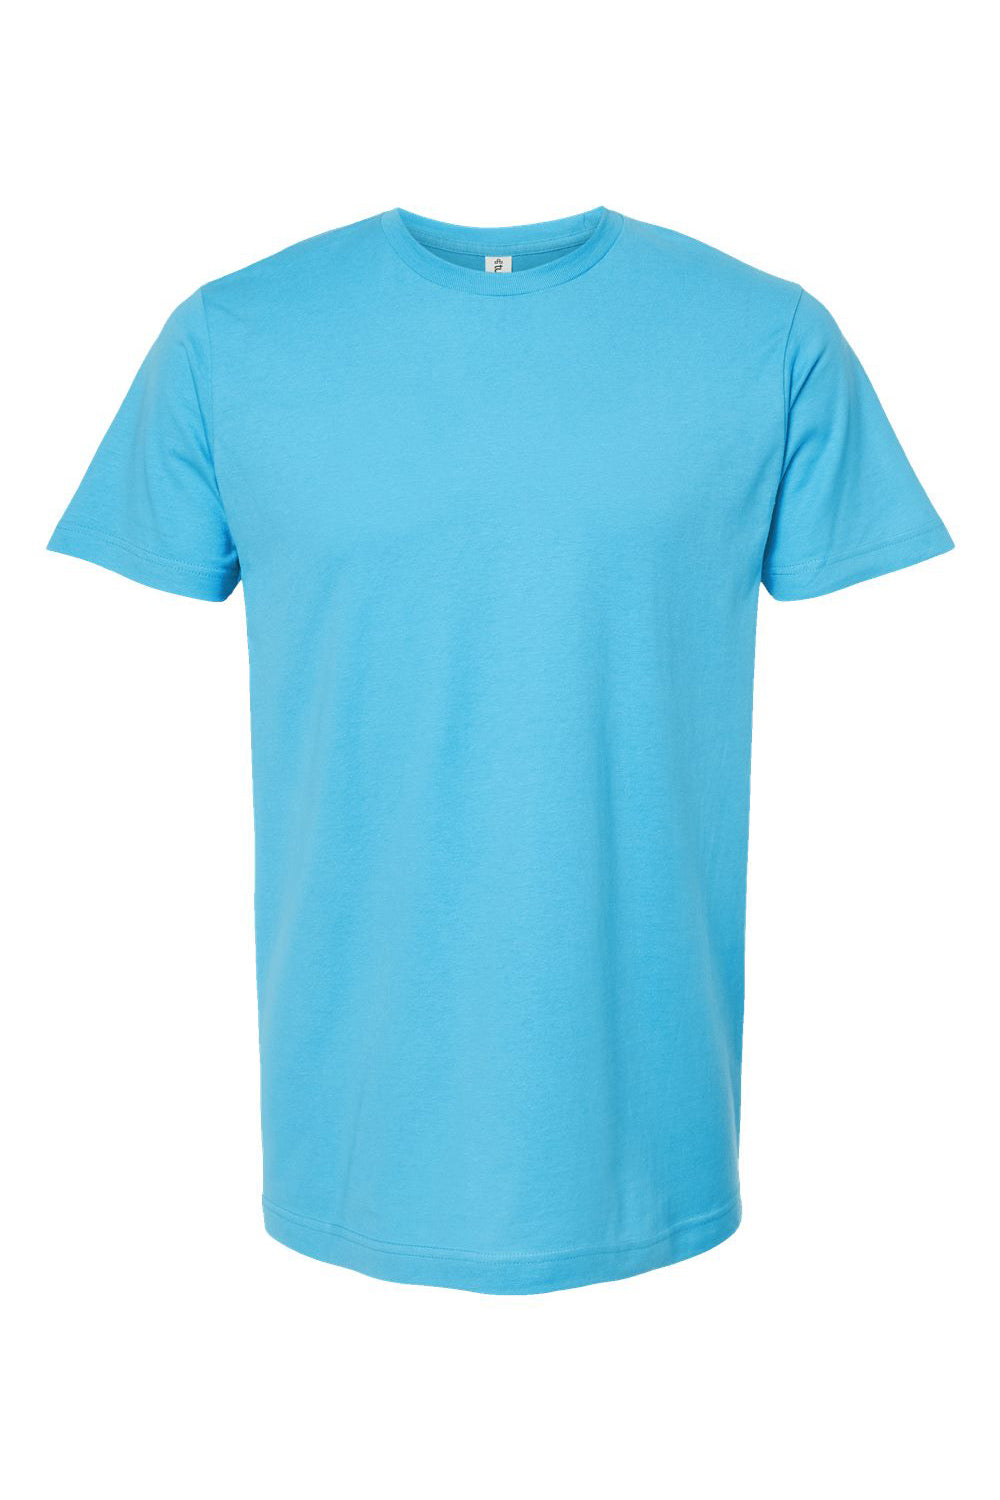 Tultex 202 Mens Fine Jersey Short Sleeve Crewneck T-Shirt Aqua Blue Flat Front